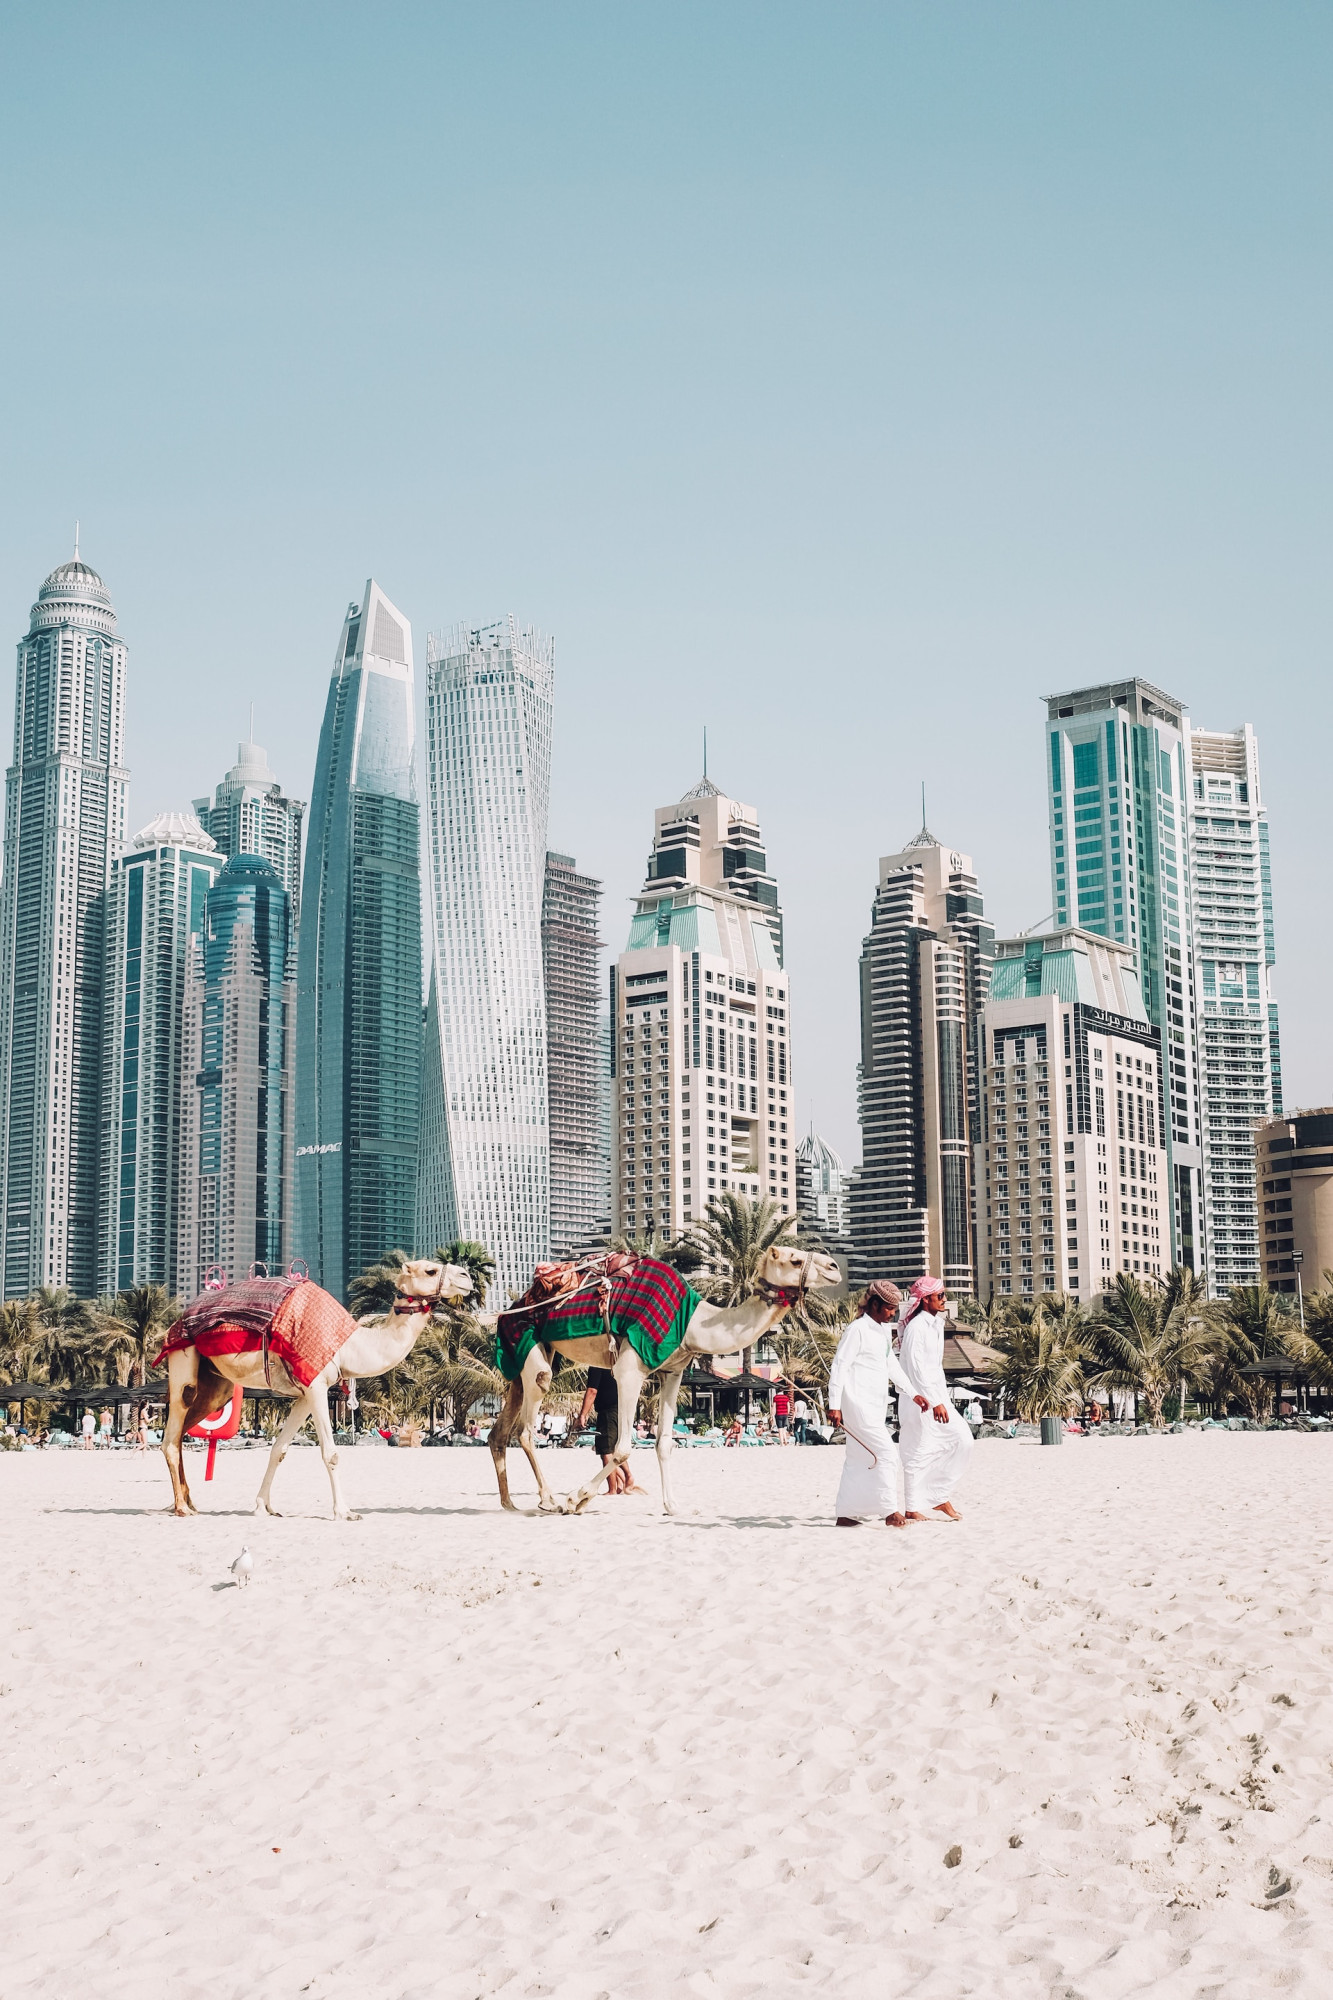 Dubai strand met kamelen